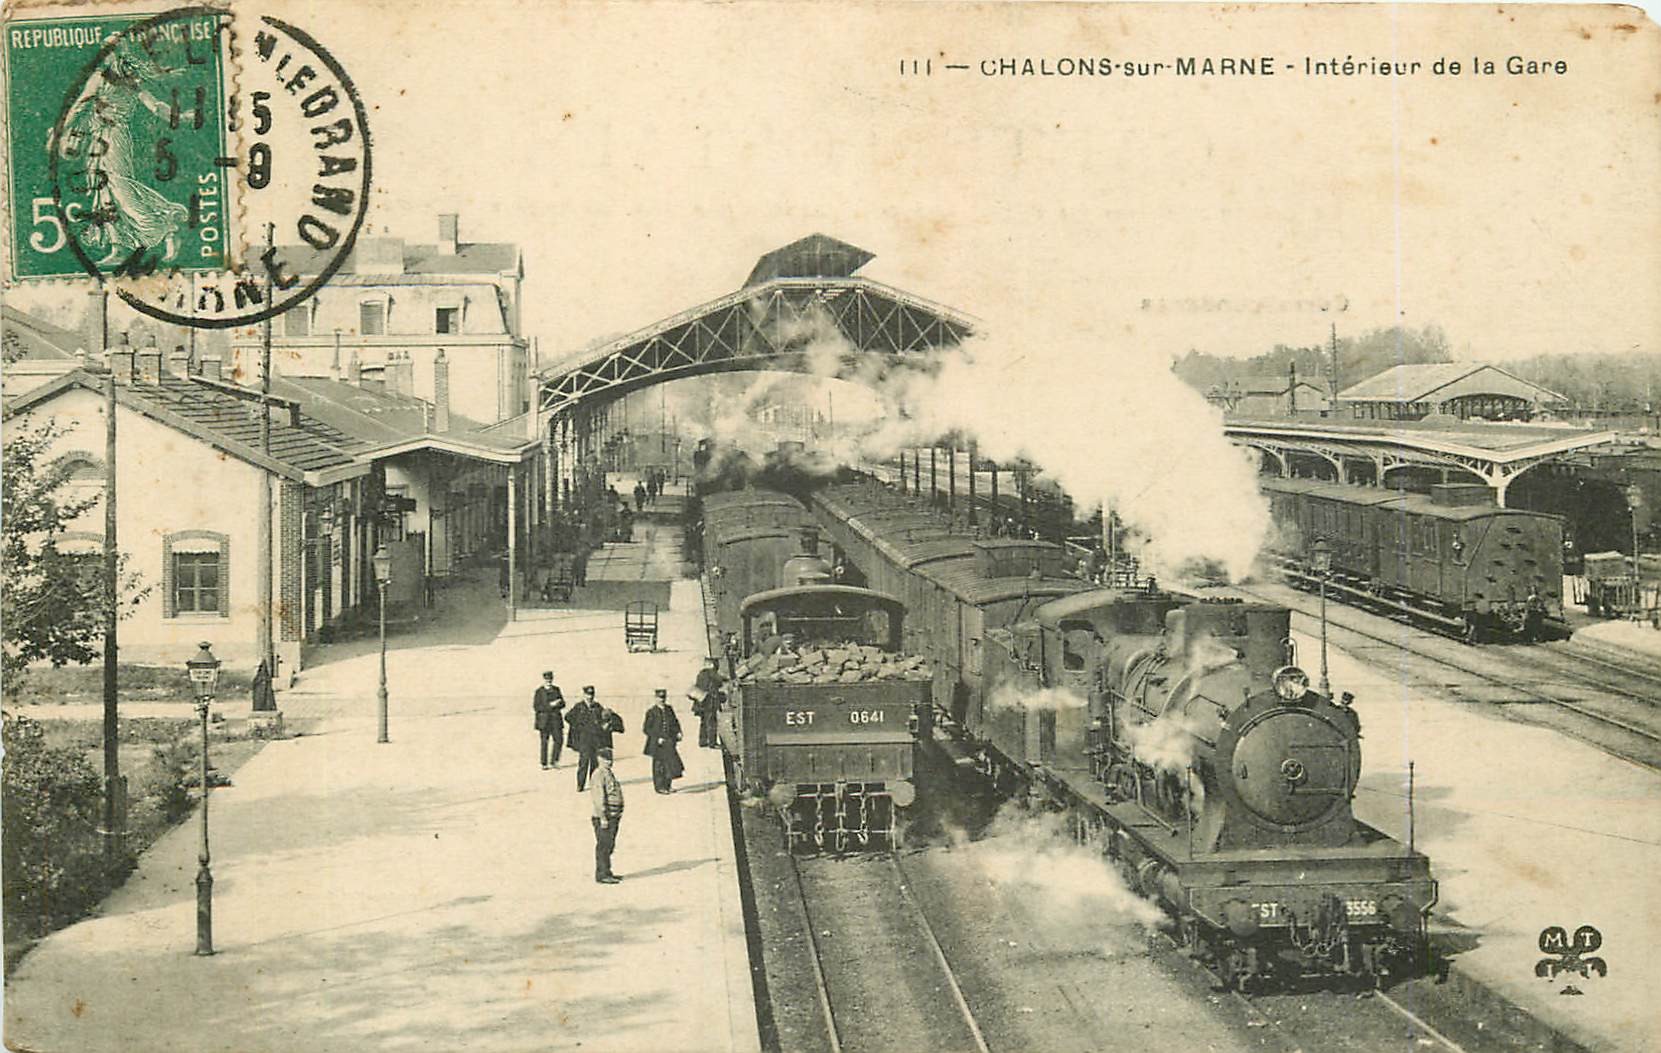 WW 51 CHÂLONS-SUR-MARNE. Trains et locomotives à vapeur dans la Gare 1910